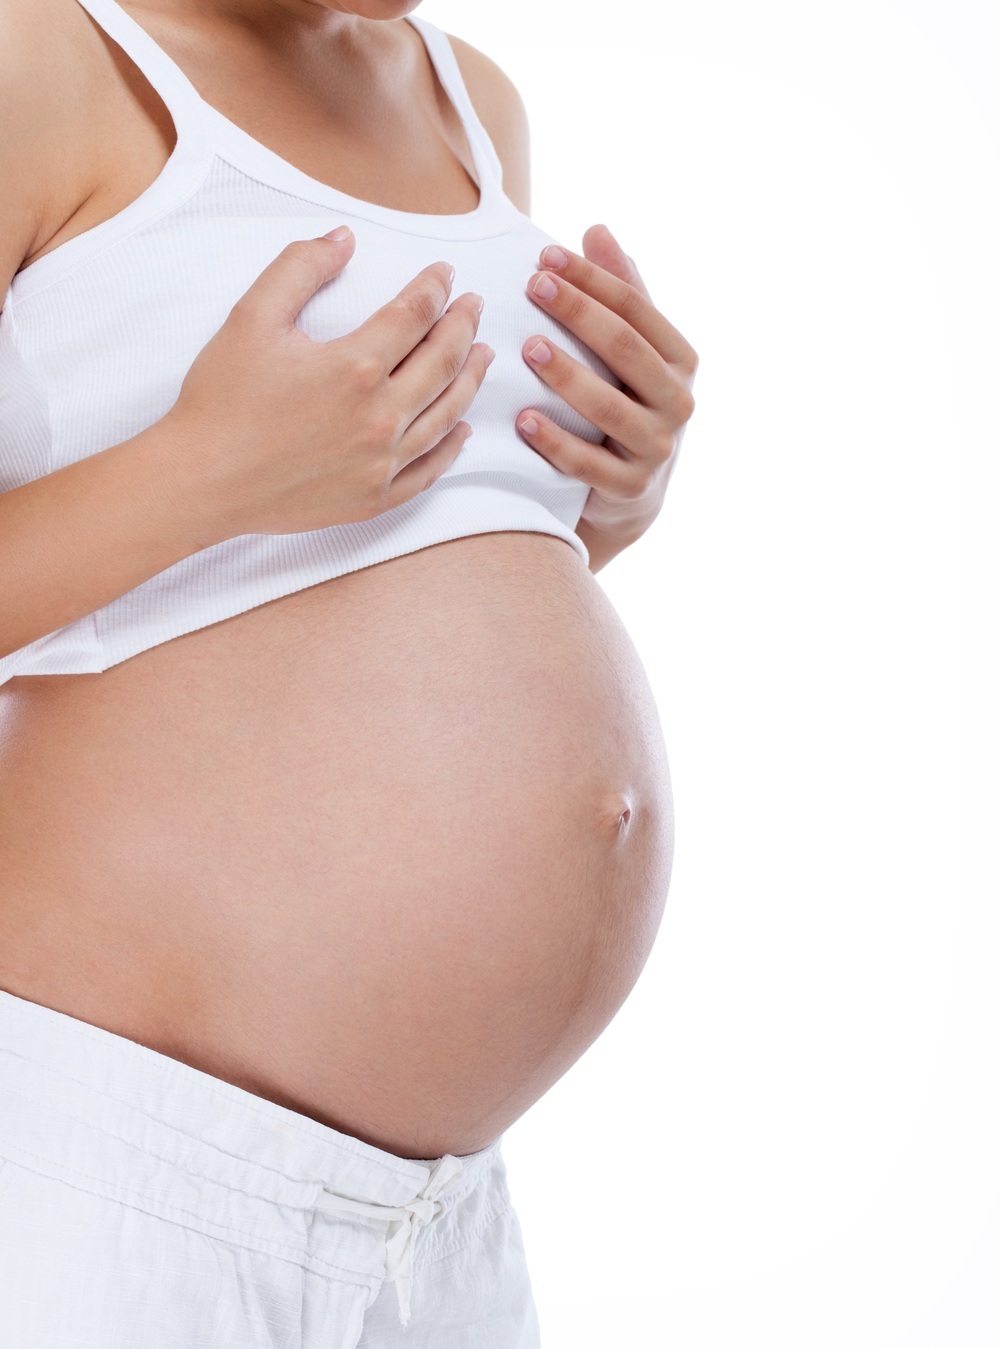 Mulher grávida com dores nos seios - foto: Lucky Business/ShutterStock.com